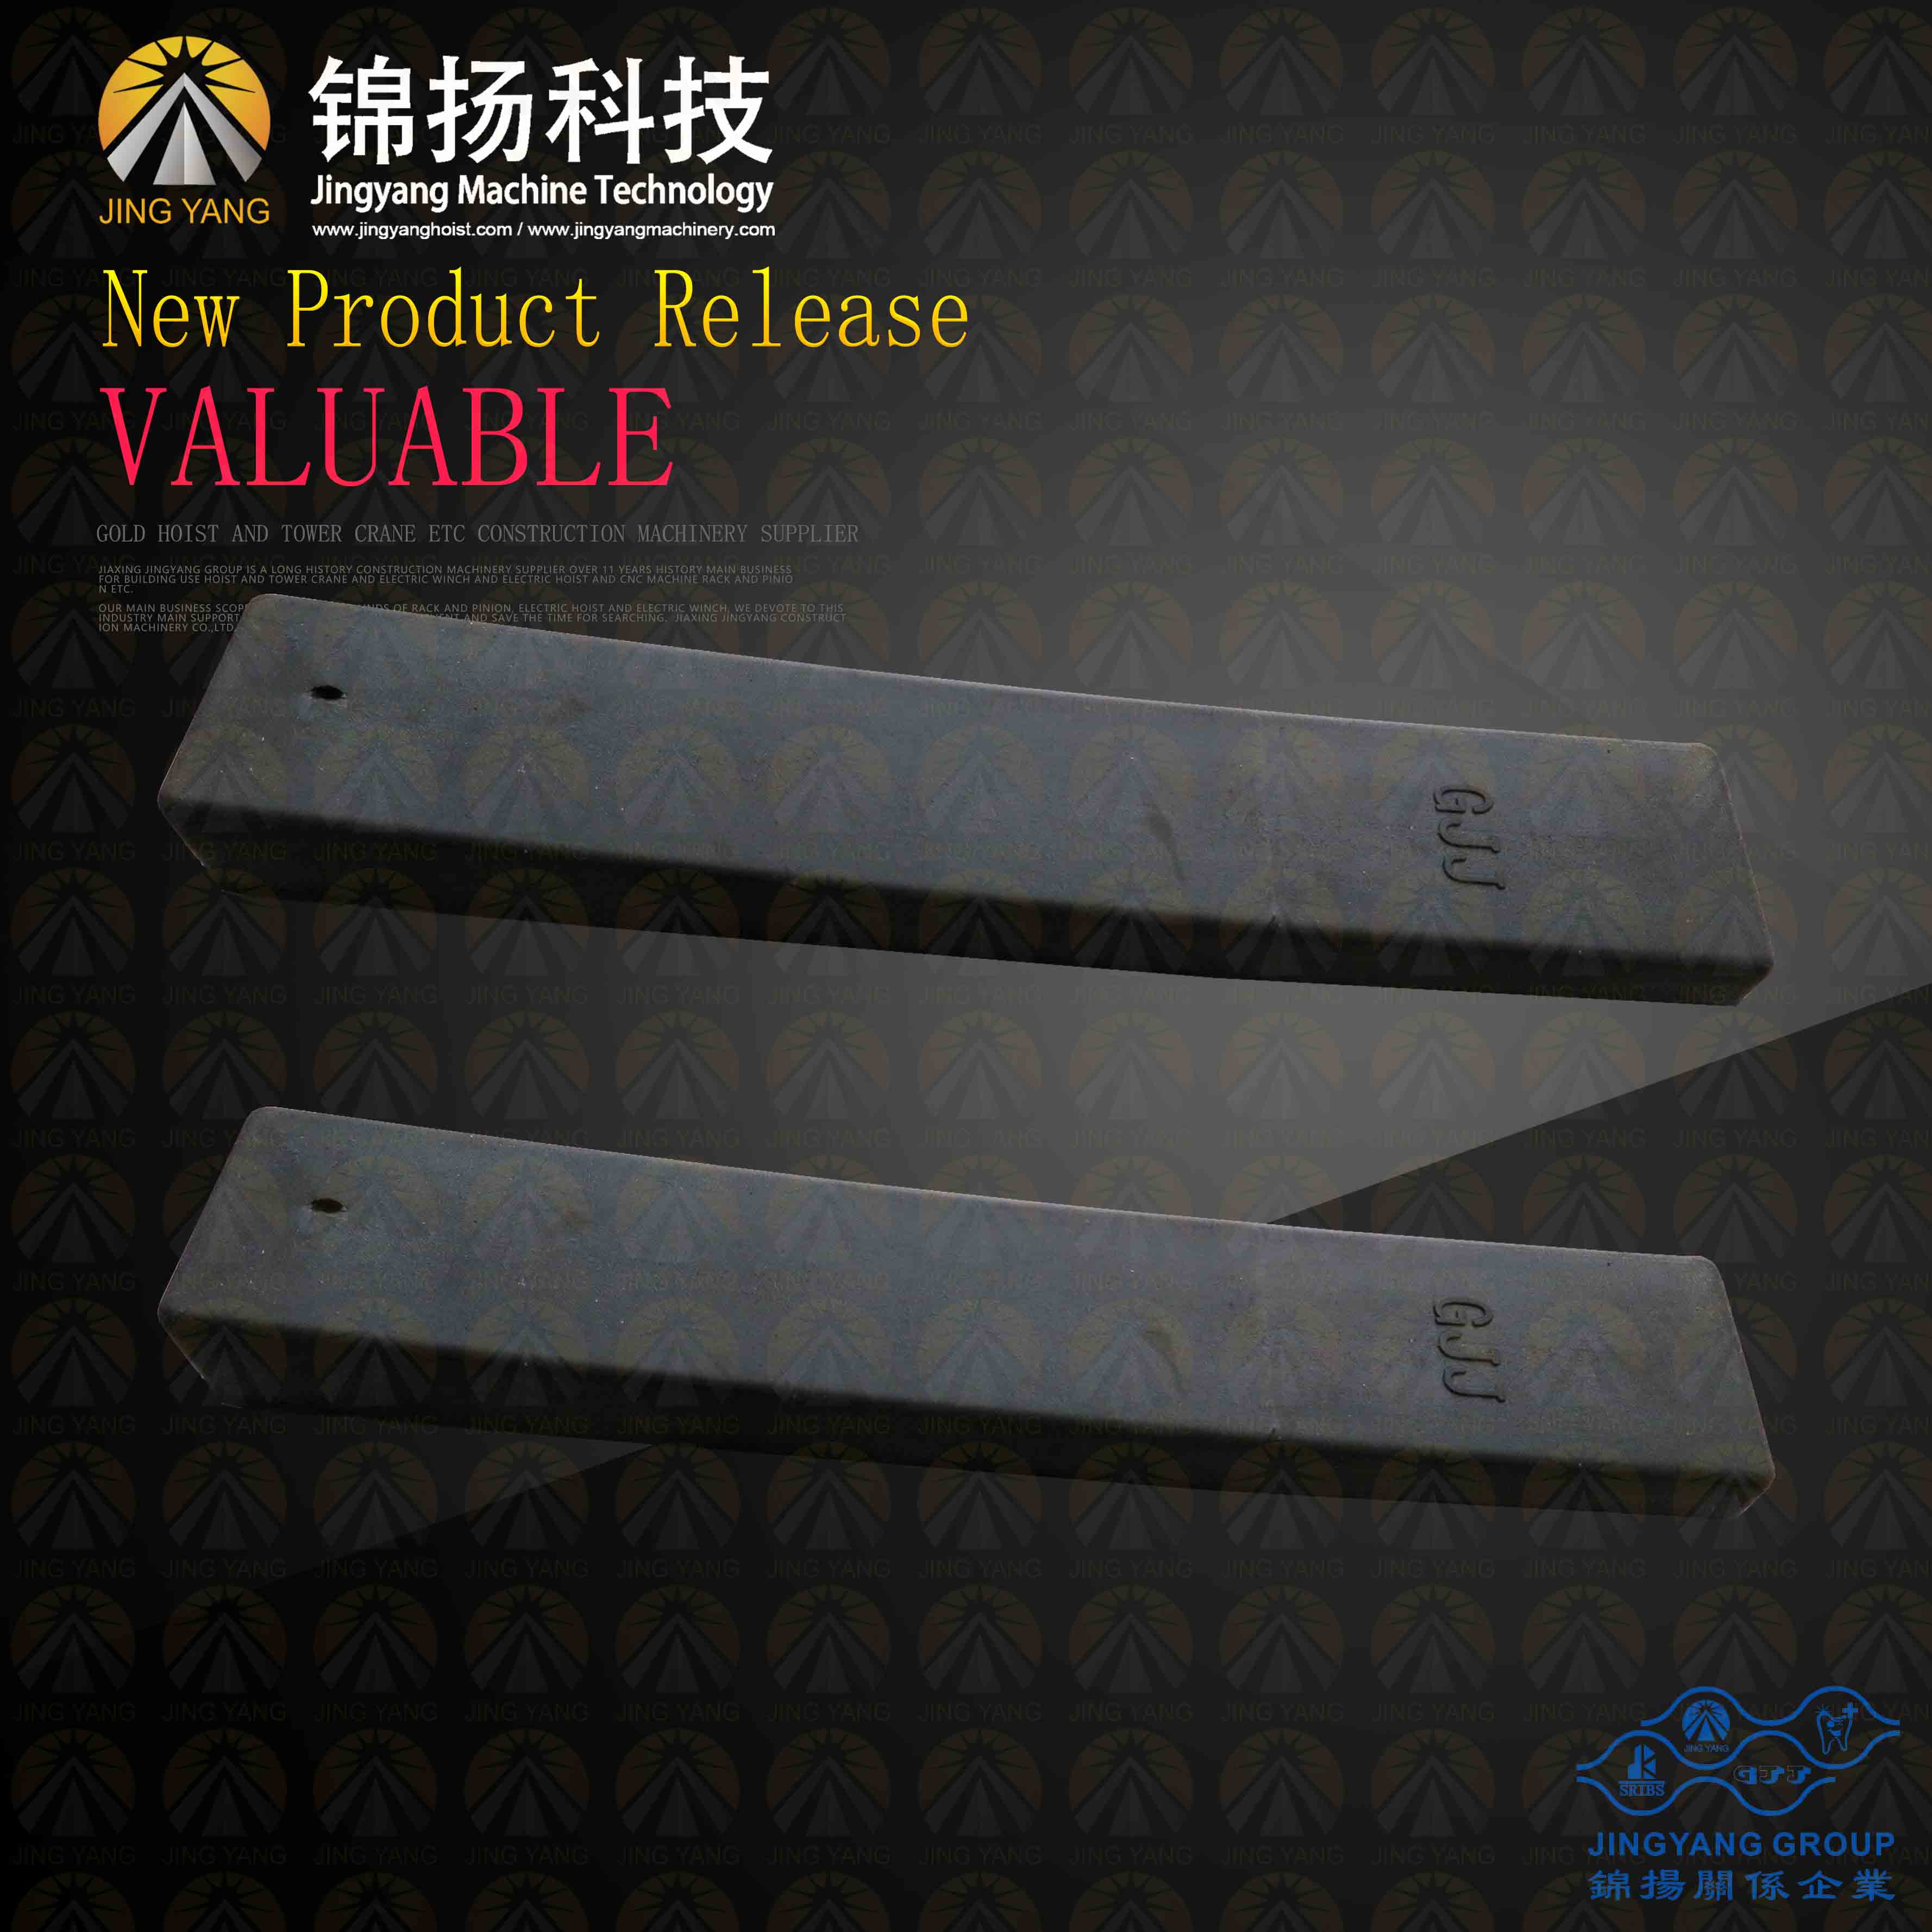 China Gold Supplier for Press Brake Tooling Die Knt Knives -
 DL-110-GJJ-RUBBER-PAD – Jinyang